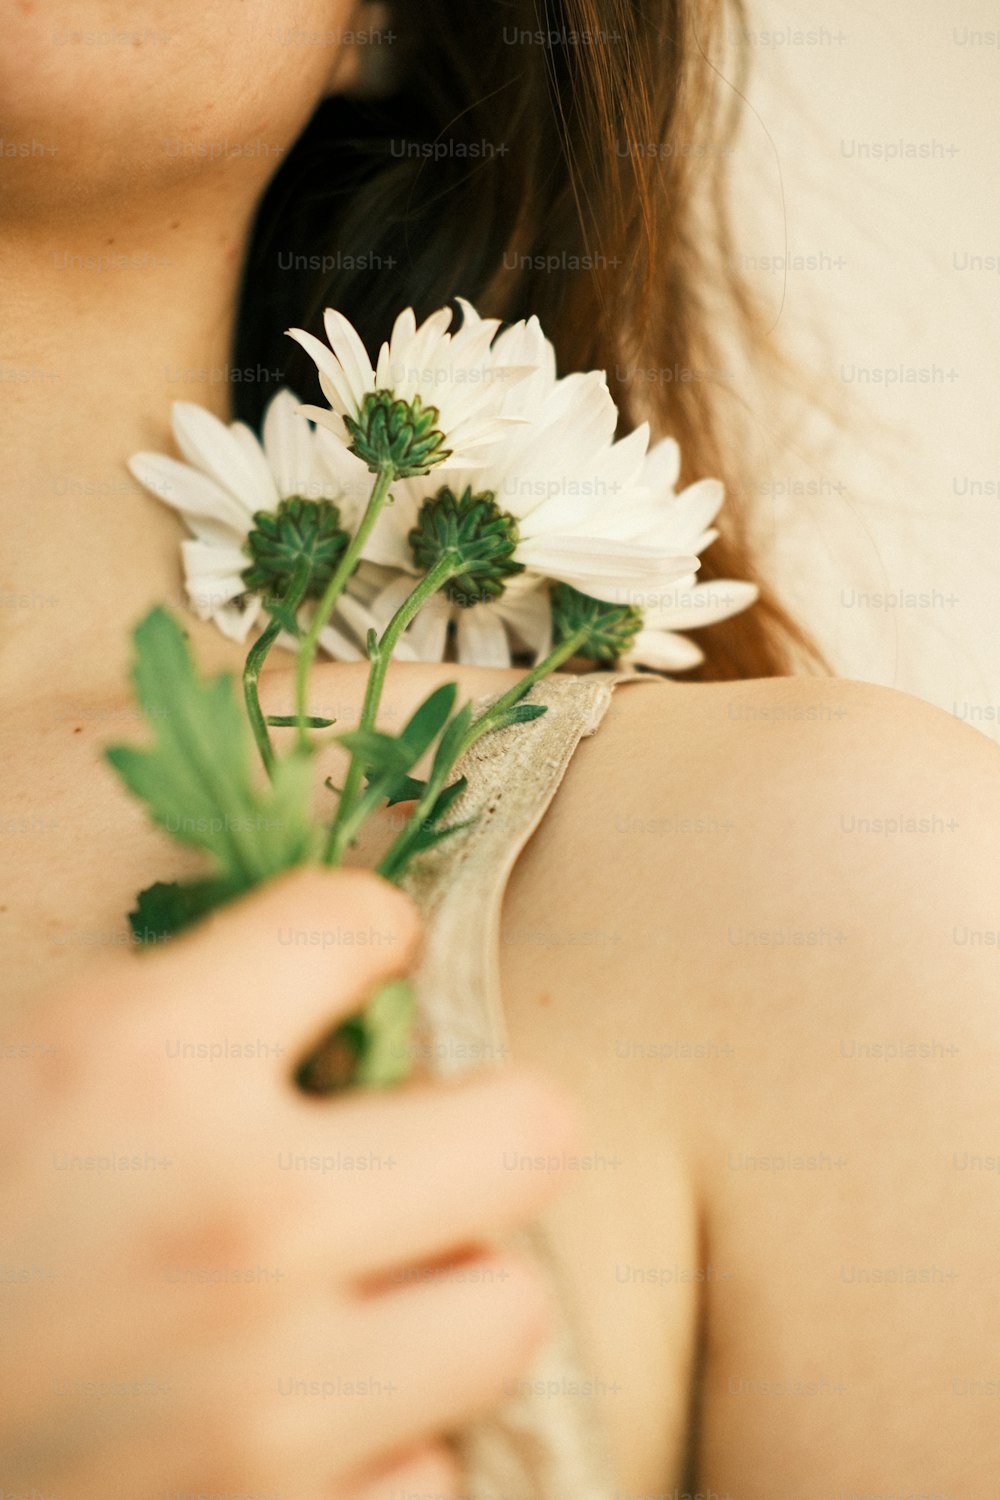 Un primer plano de una persona sosteniendo una flor